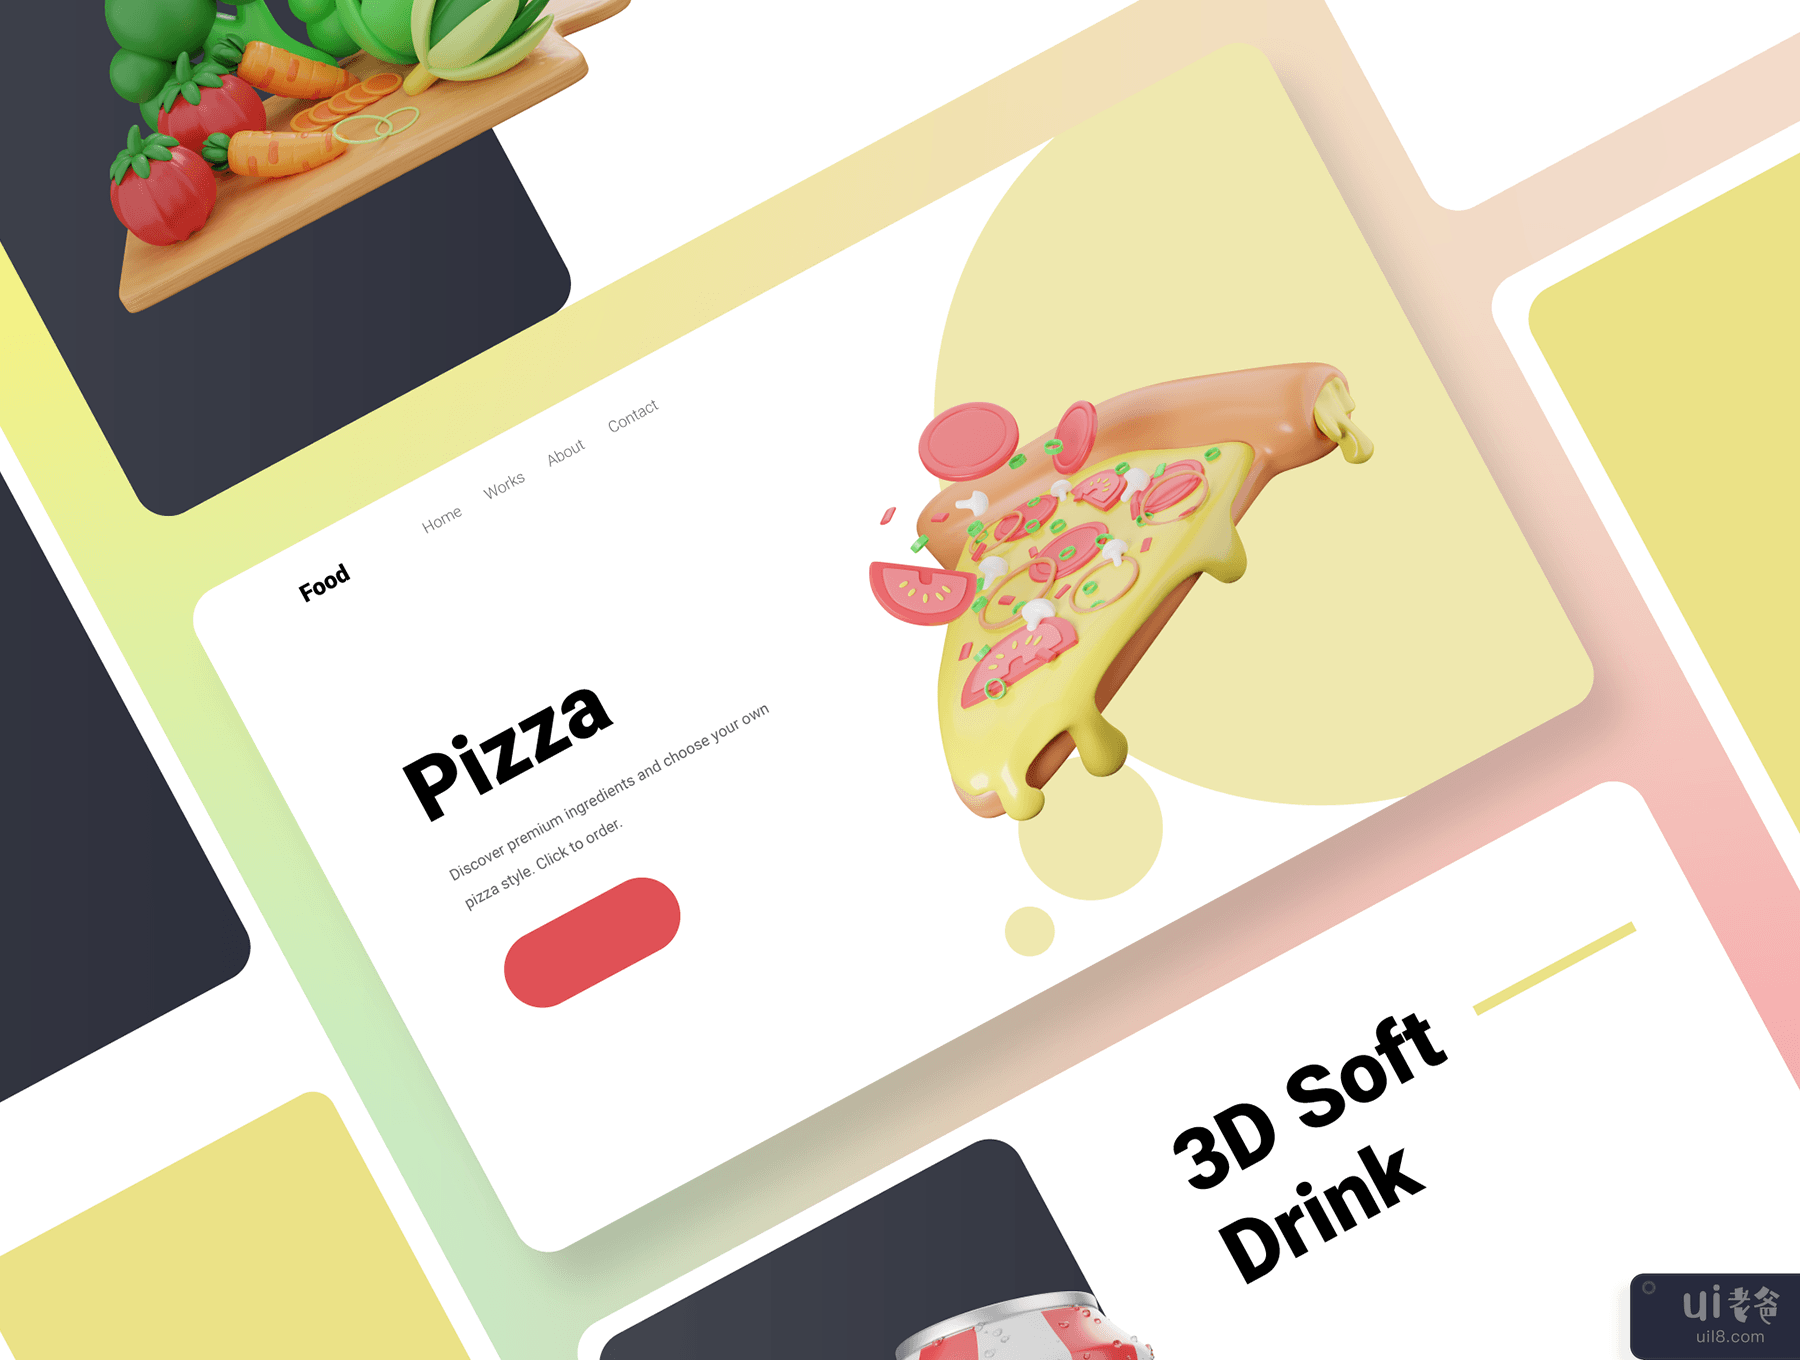 30 个 3D 食品和餐饮图标插图 (30 3D Food & Meals Icons Illustration)插图2